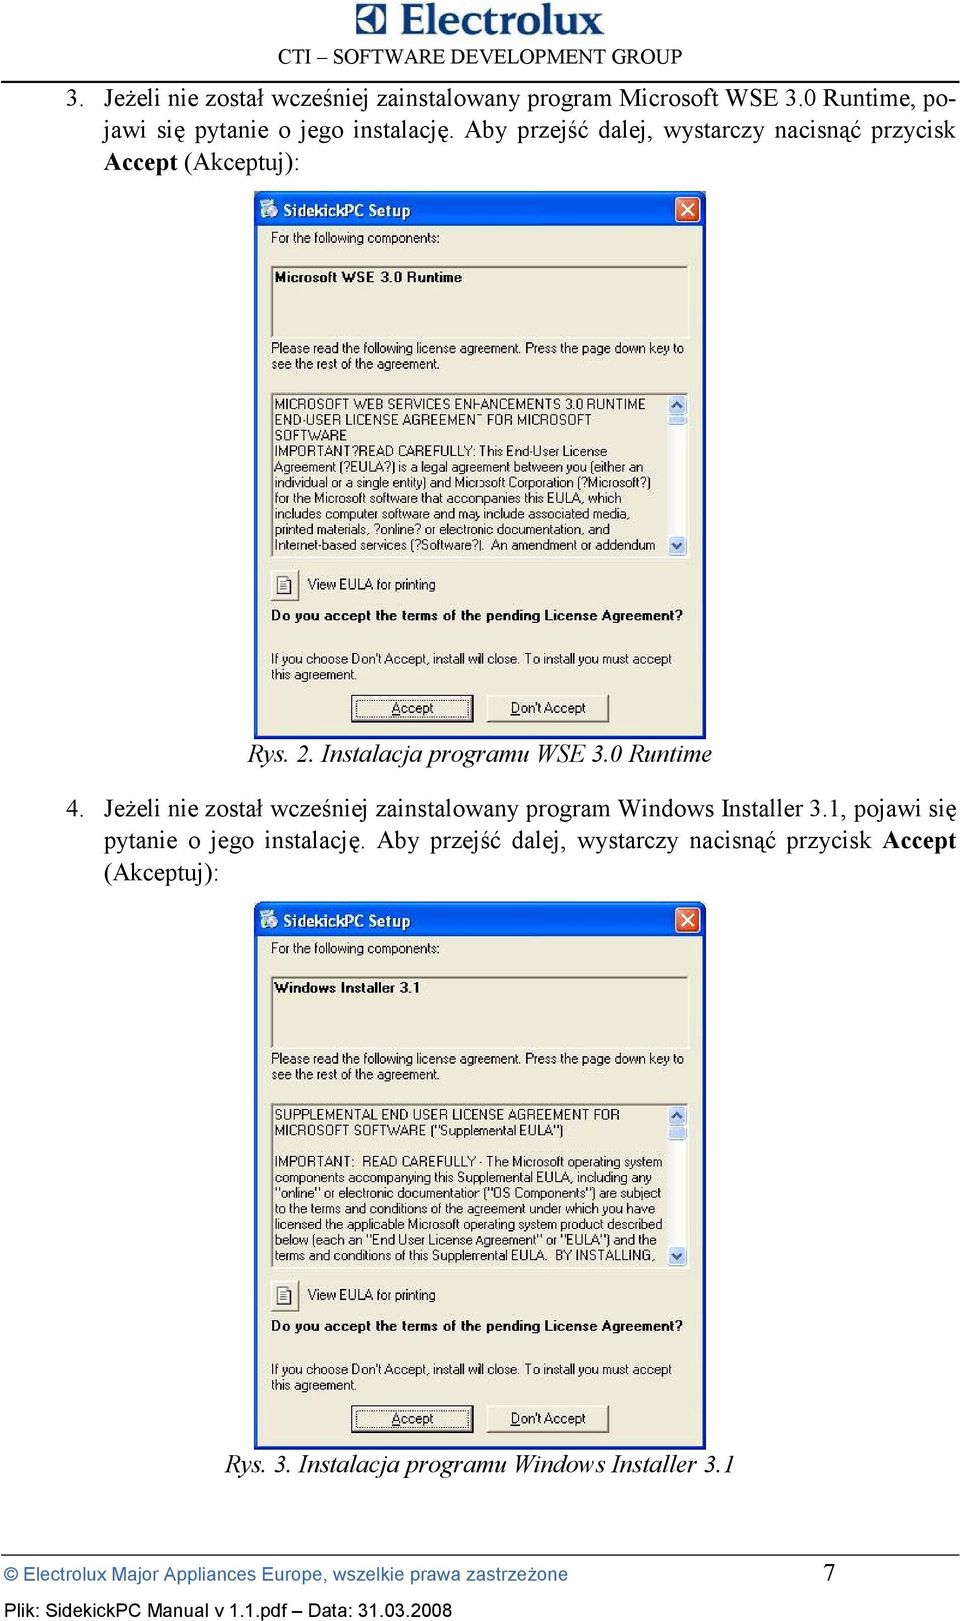 JeOeli nie zosta4 wczeiniej zainstalowany program Windows Installer 3.1, pojawi si= pytanie o jego instalacj=.